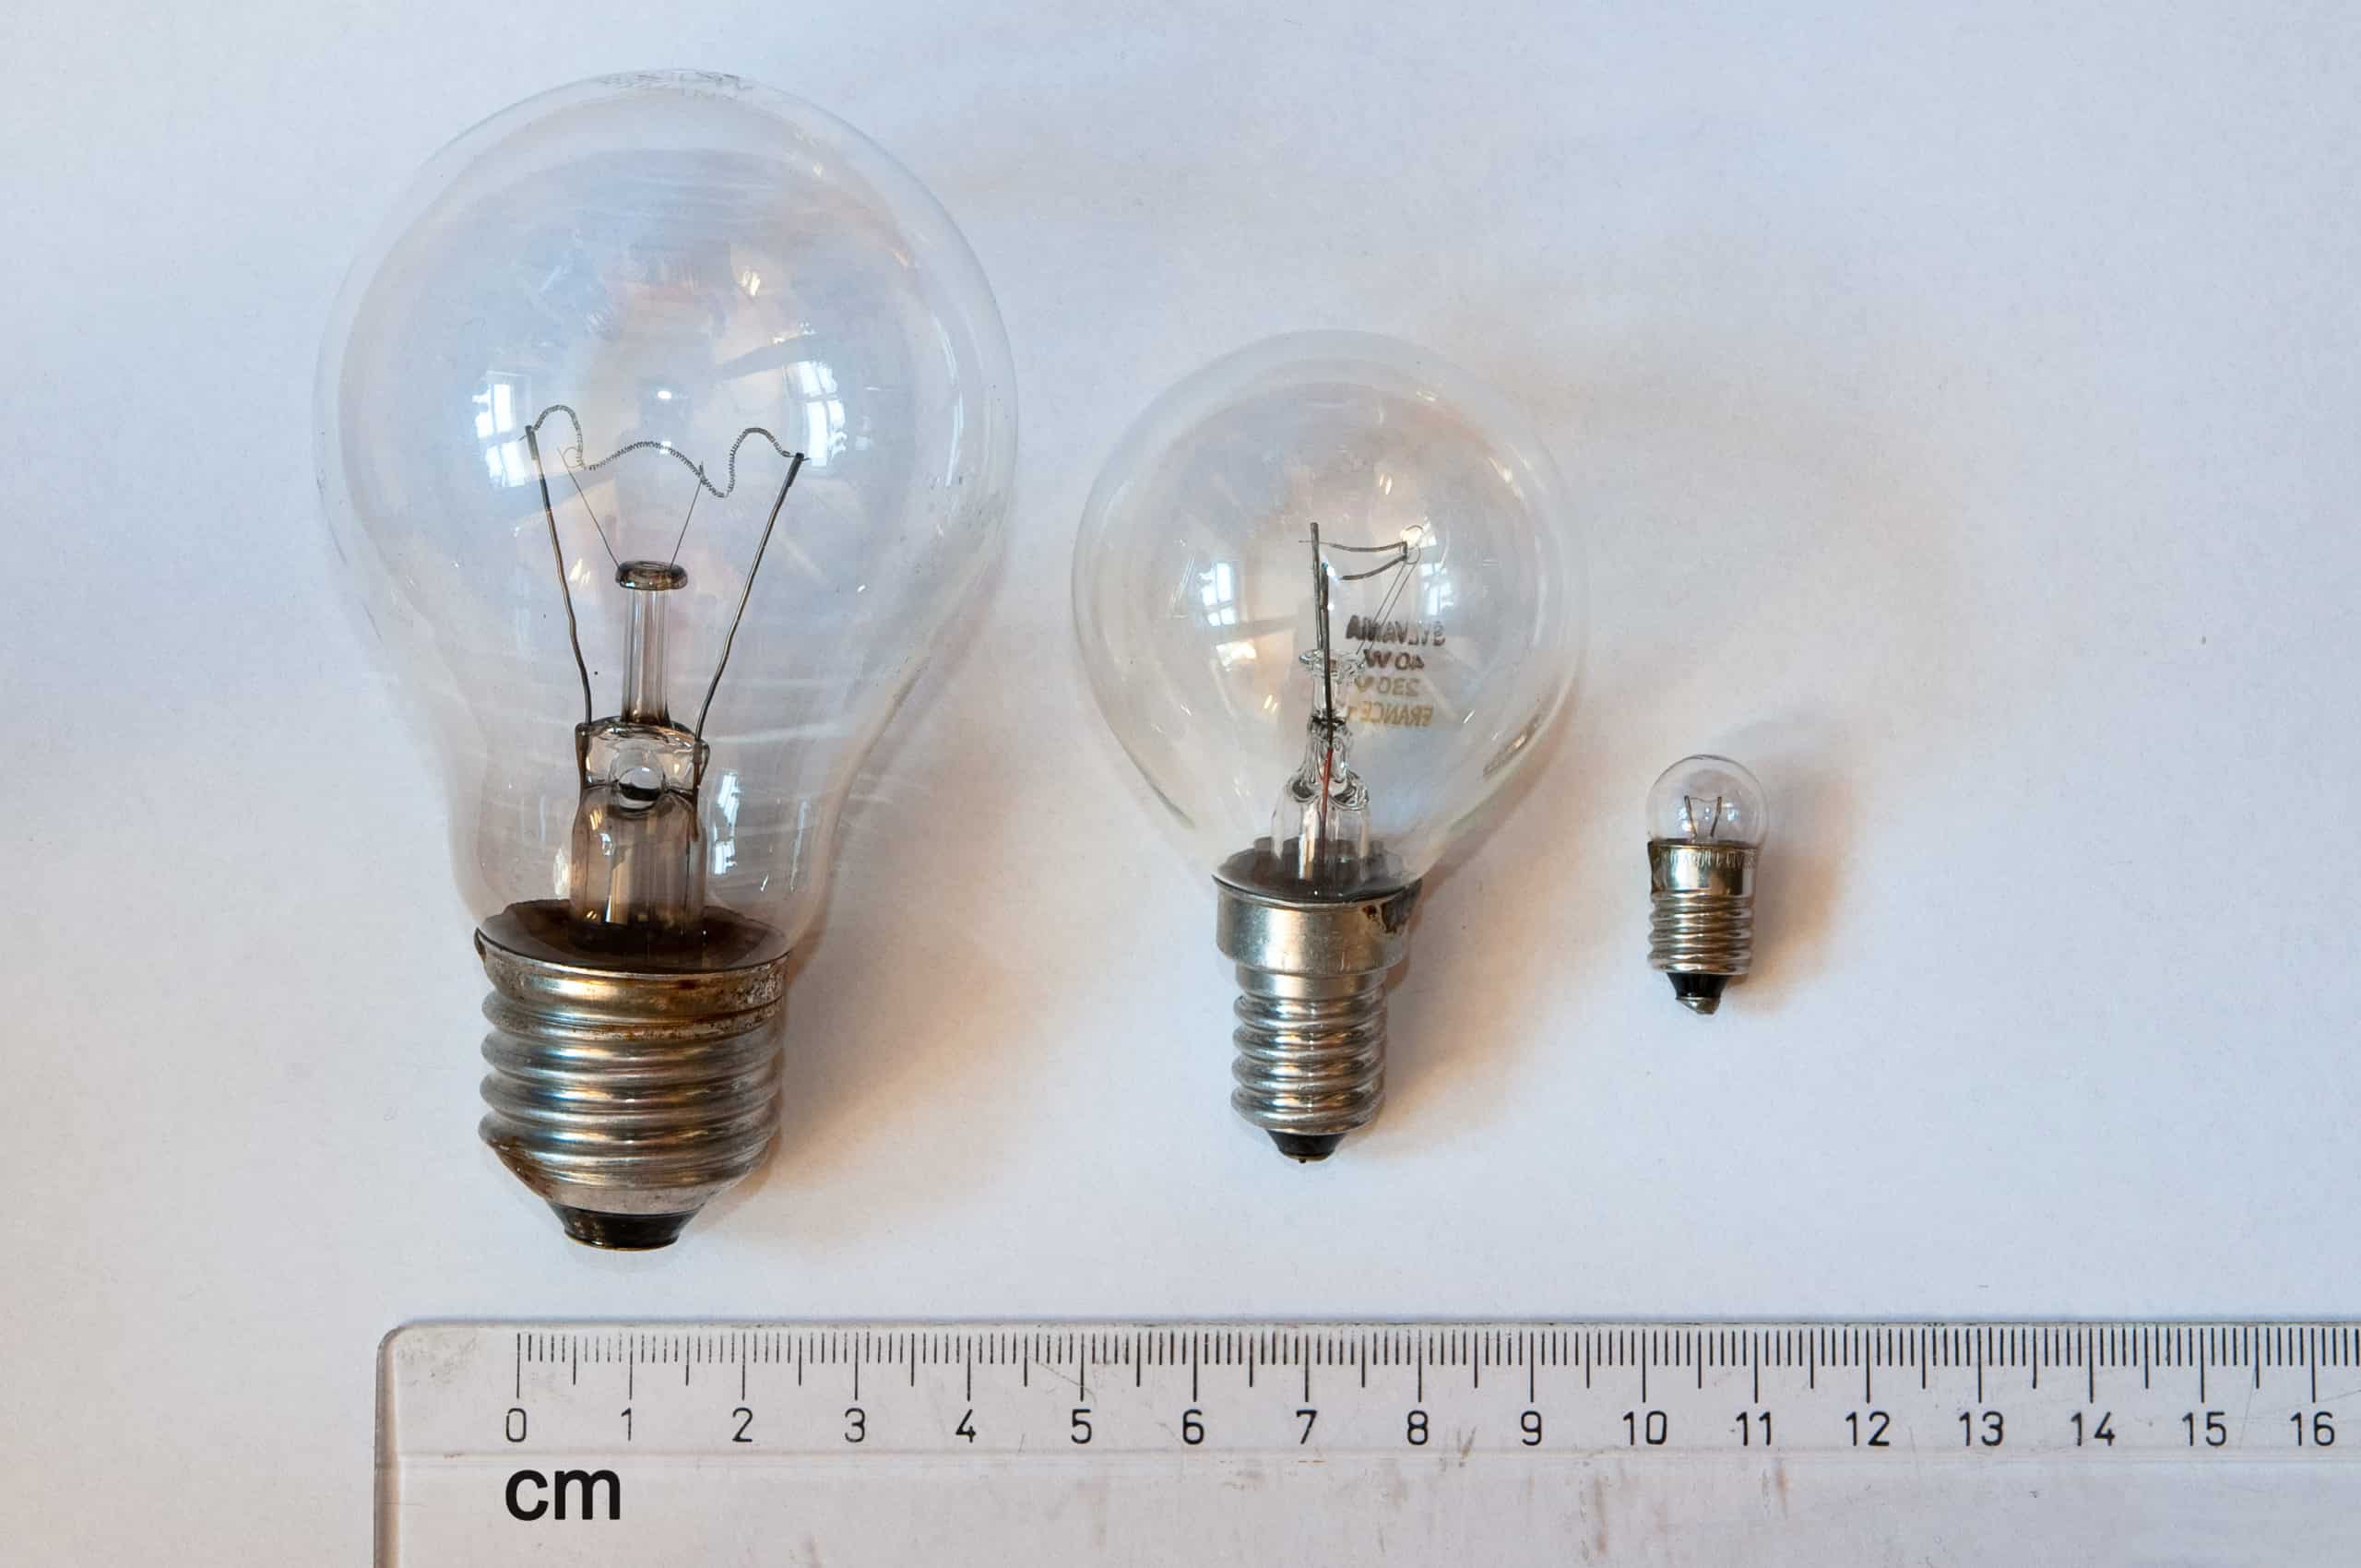 Draaien Jongleren Bij elkaar passen 15 Soorten Lampen Fittingen in Nederland – Hemels Thuis